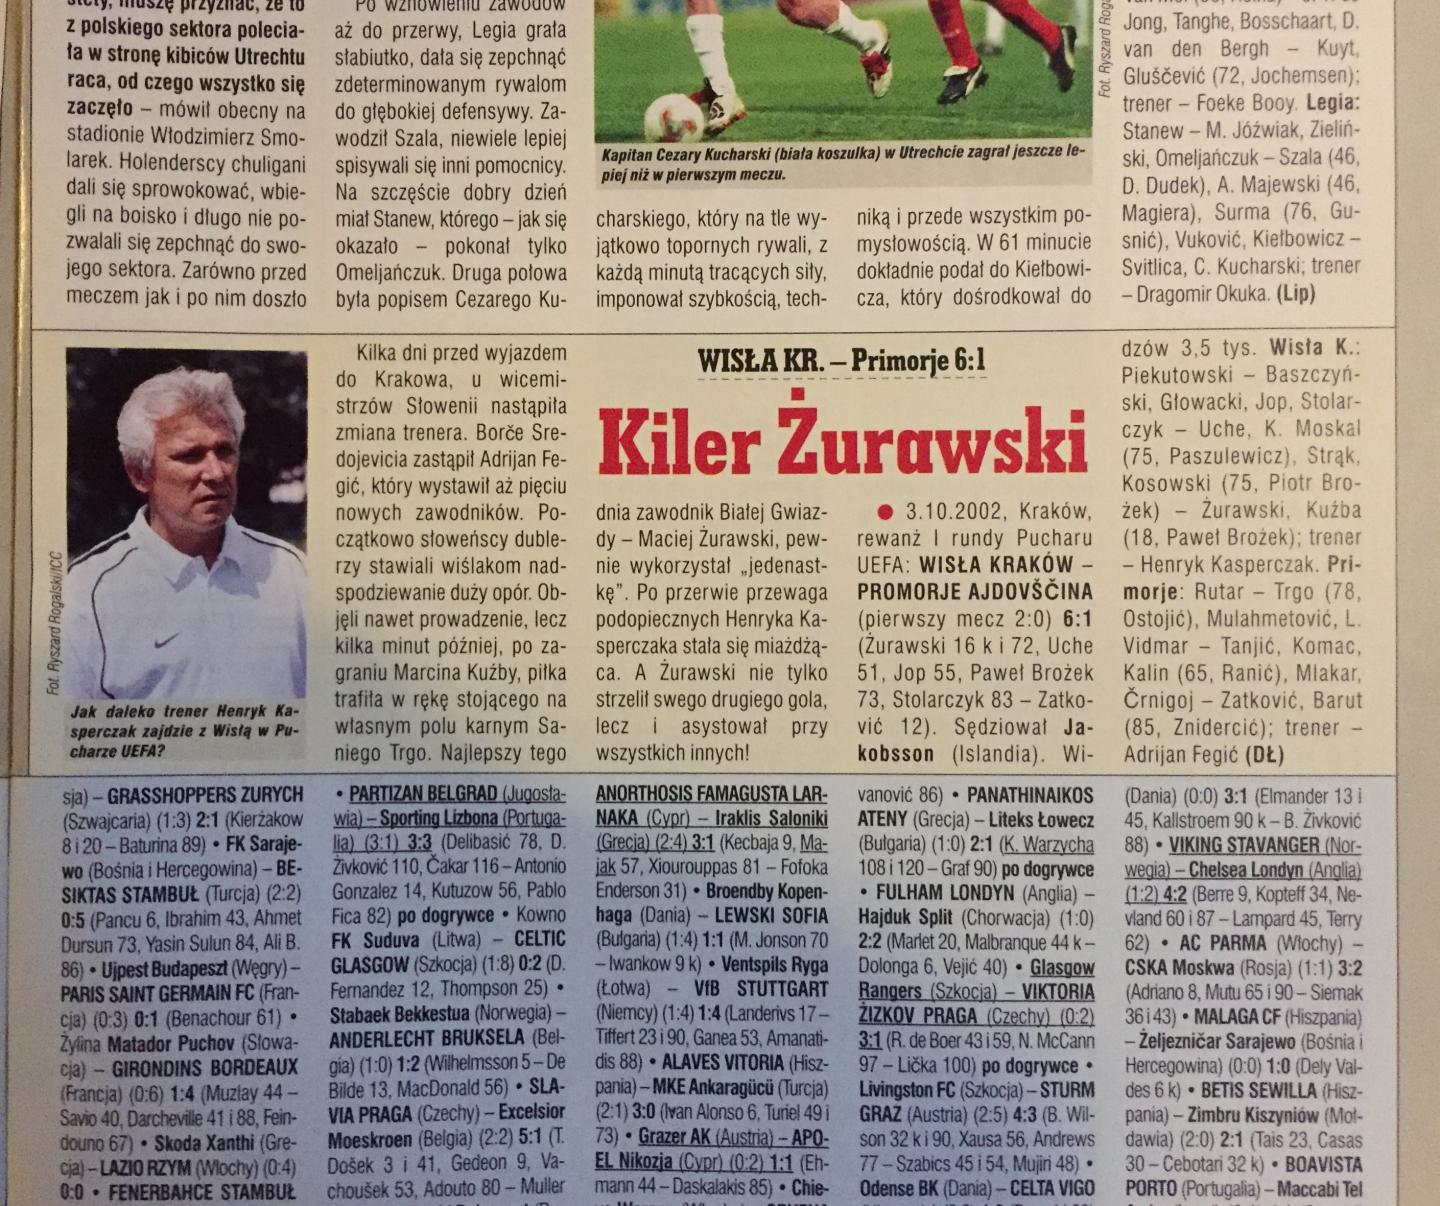 Wisła Kraków - NK Primorje 6:1 (03.10.2002) Piłka Nożna